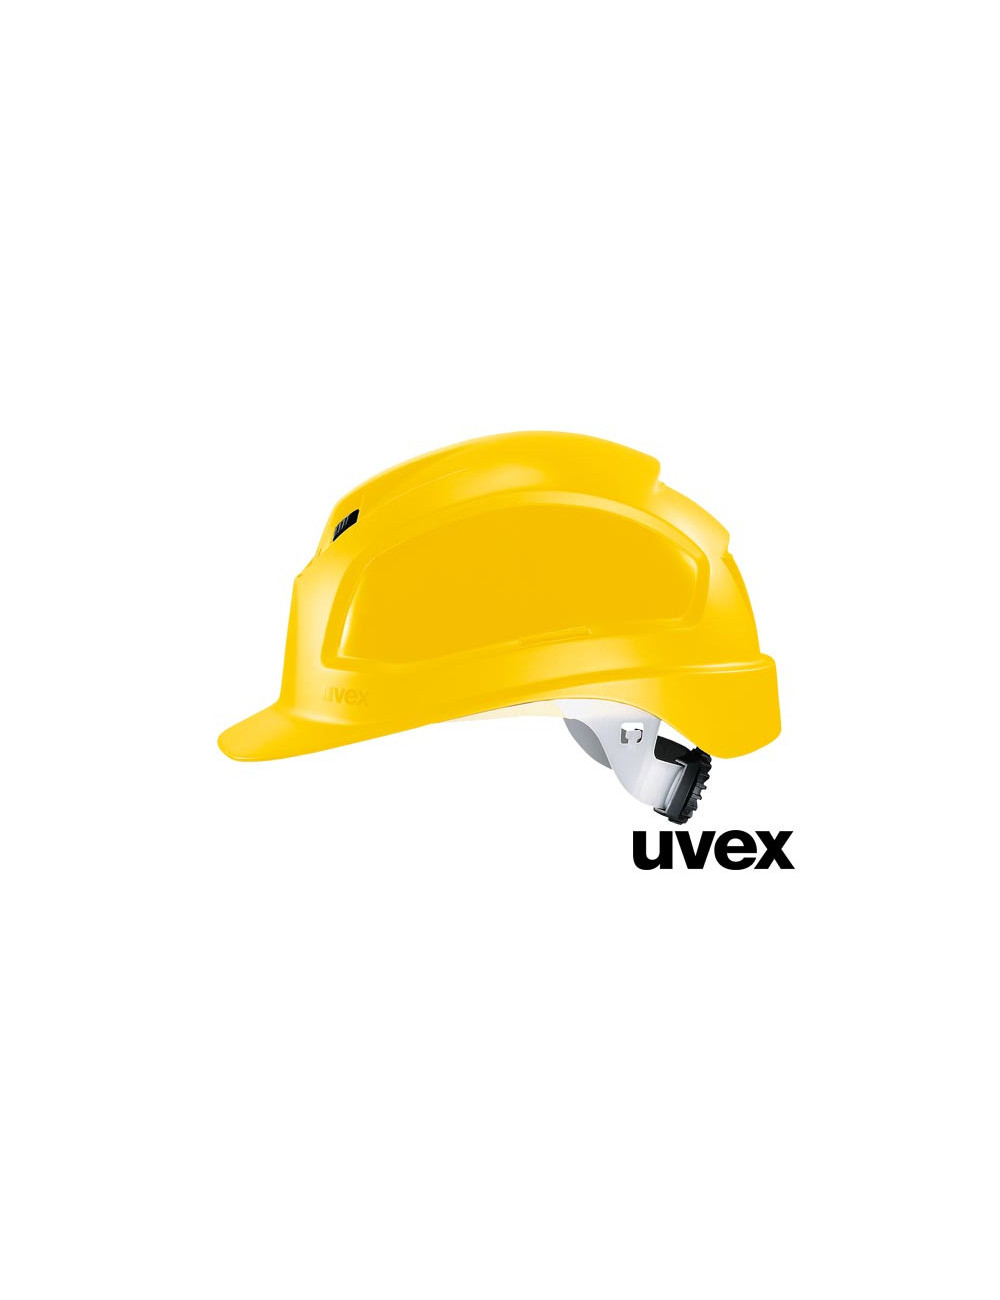 ux-kas-pheos und gelber Uvex-Schutzhelm